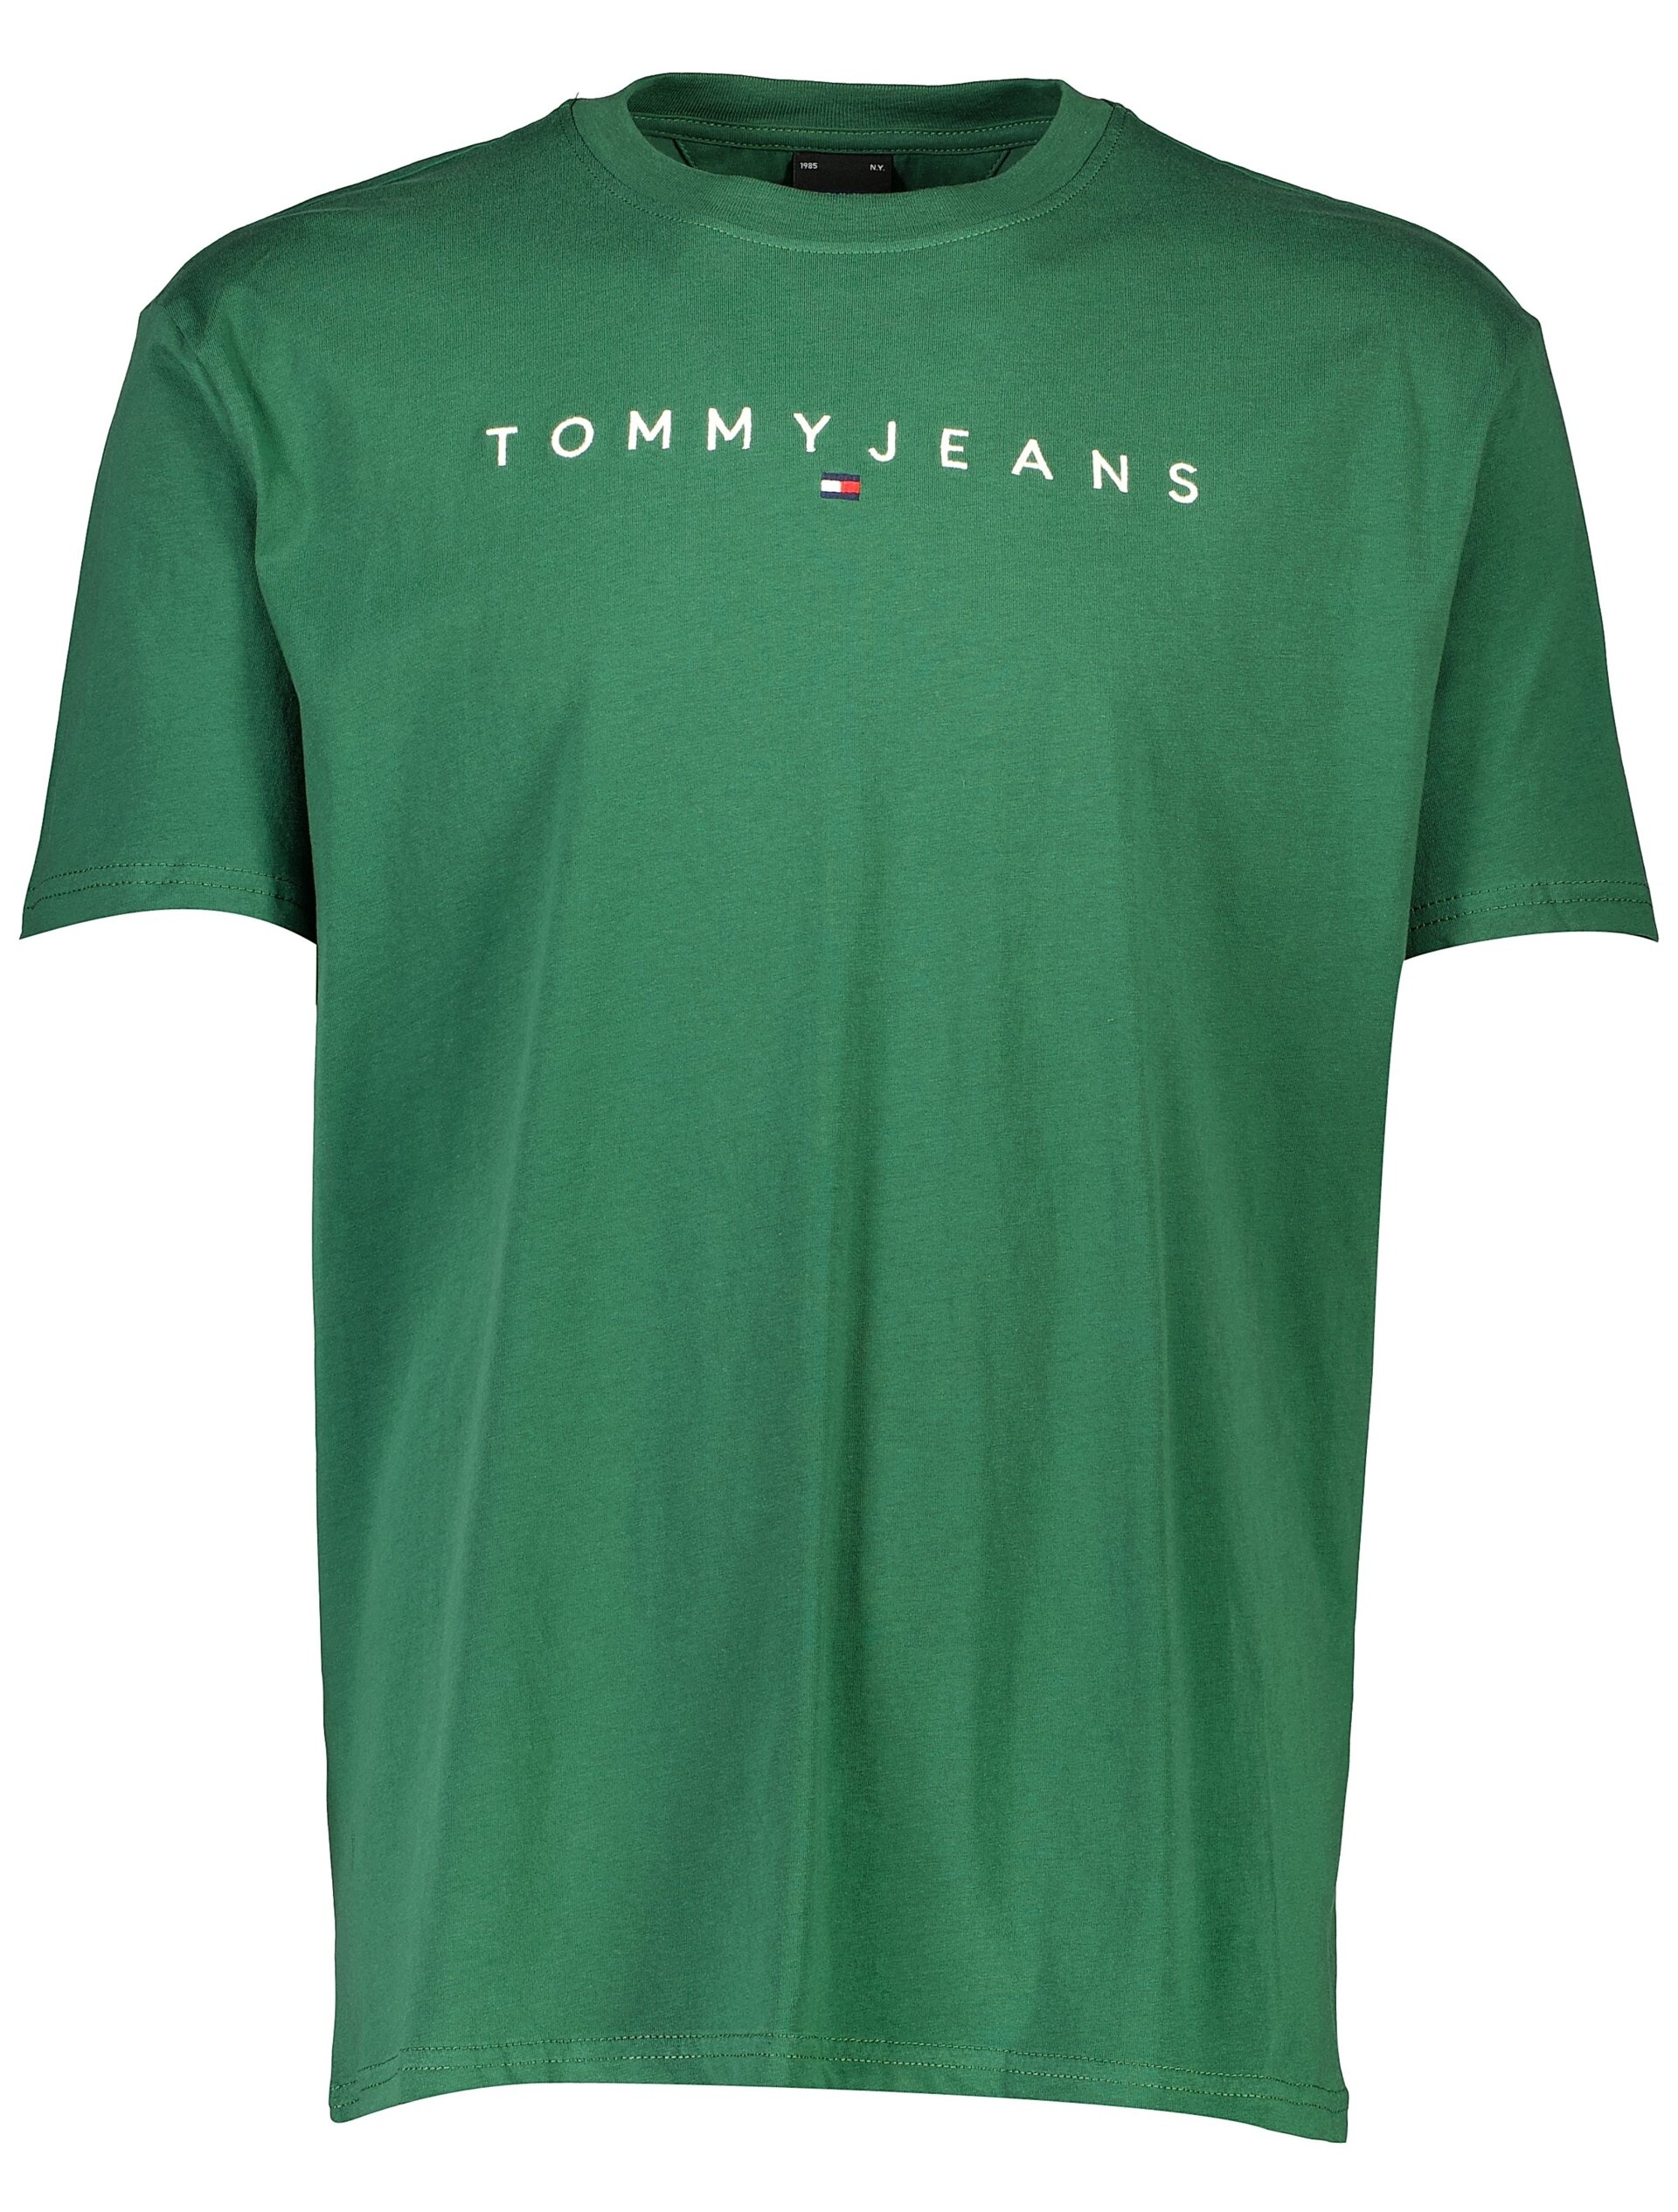 Tommy Jeans T-shirt grøn / l4l green